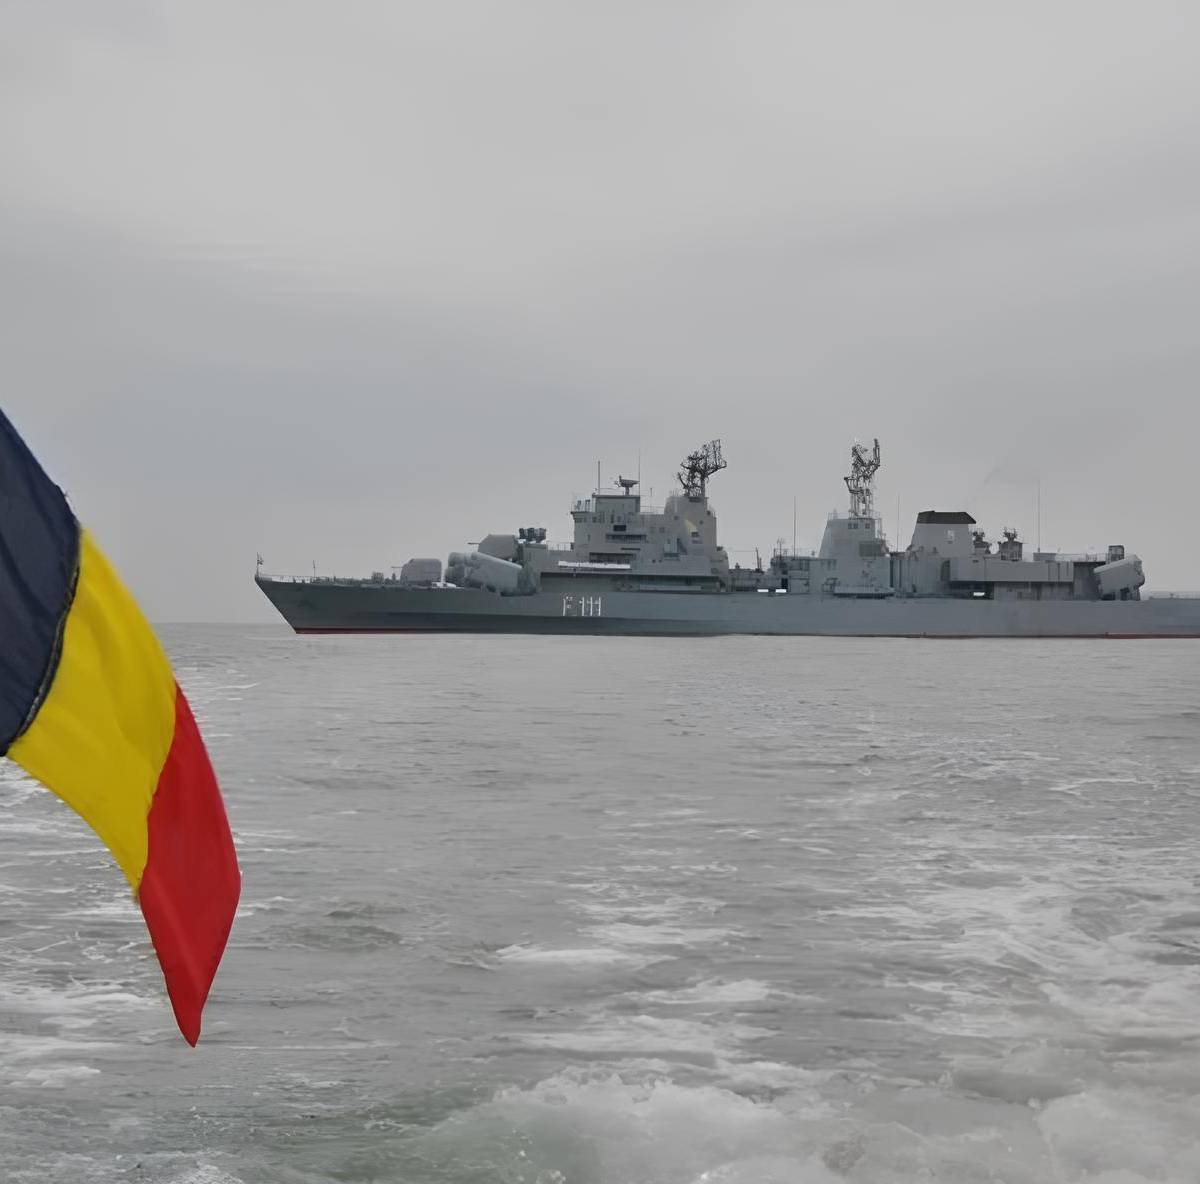 Румыния как плацдарм против интересов РФ в Черноморском регионе